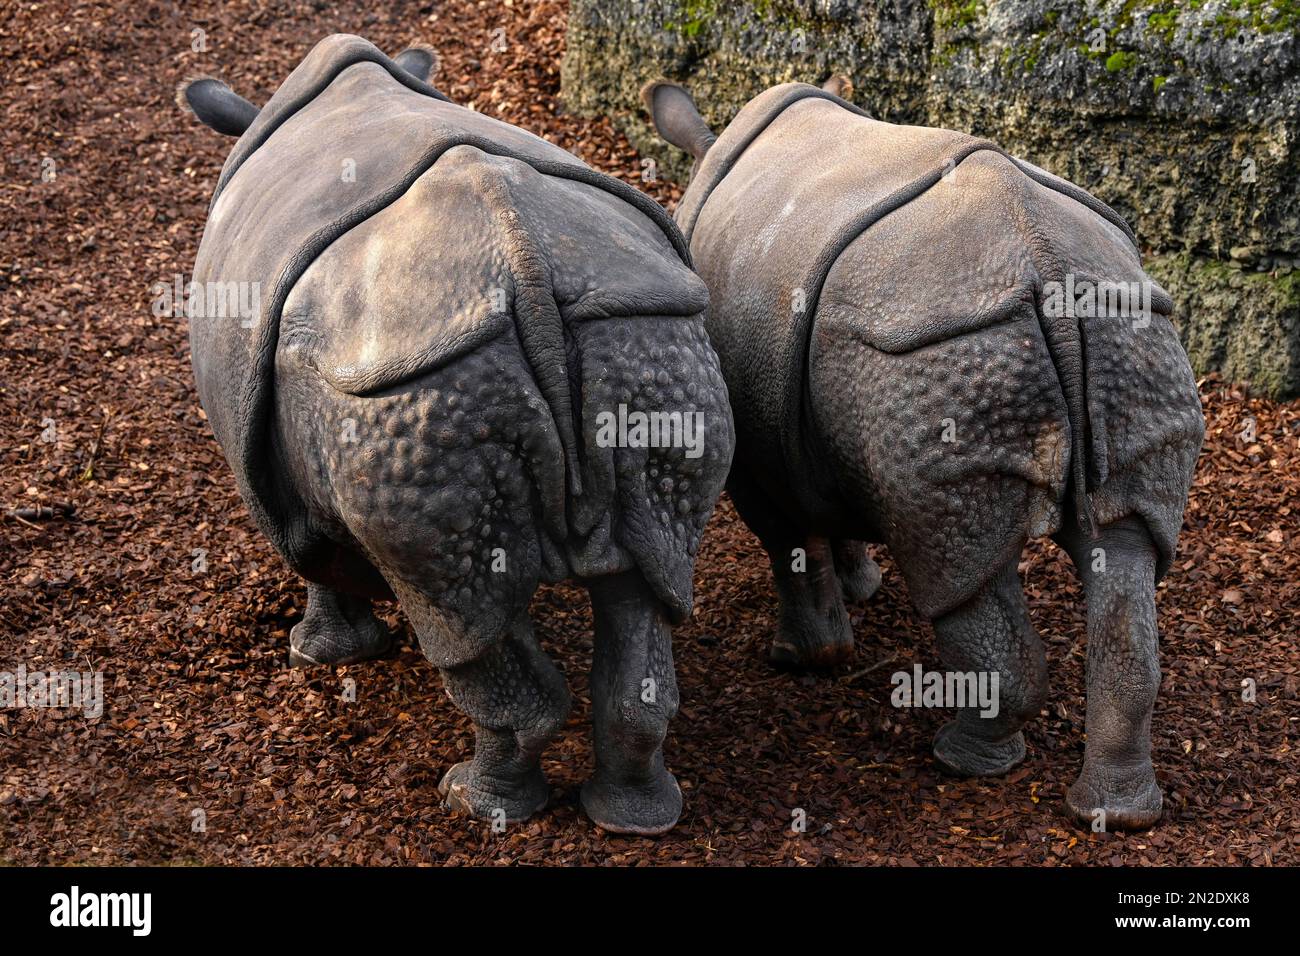 Rhinocéros indiens (Rhinoceros unicornis), captifs, Zoo de Bâle, Suisse Banque D'Images